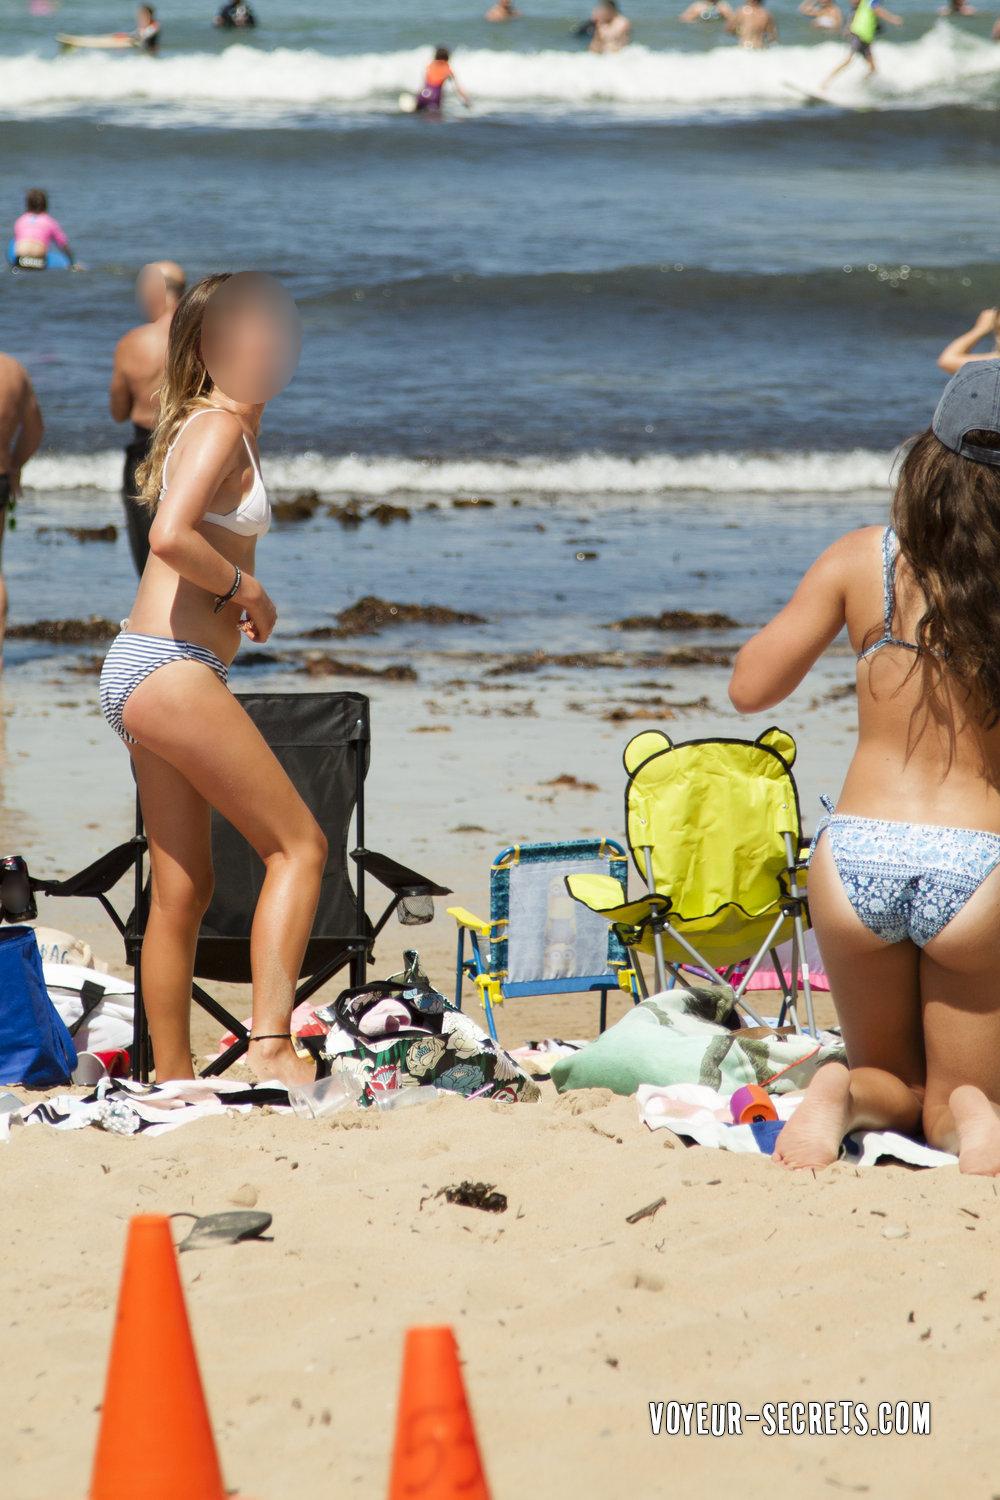 beach vouyer amateur sex Adult Pictures